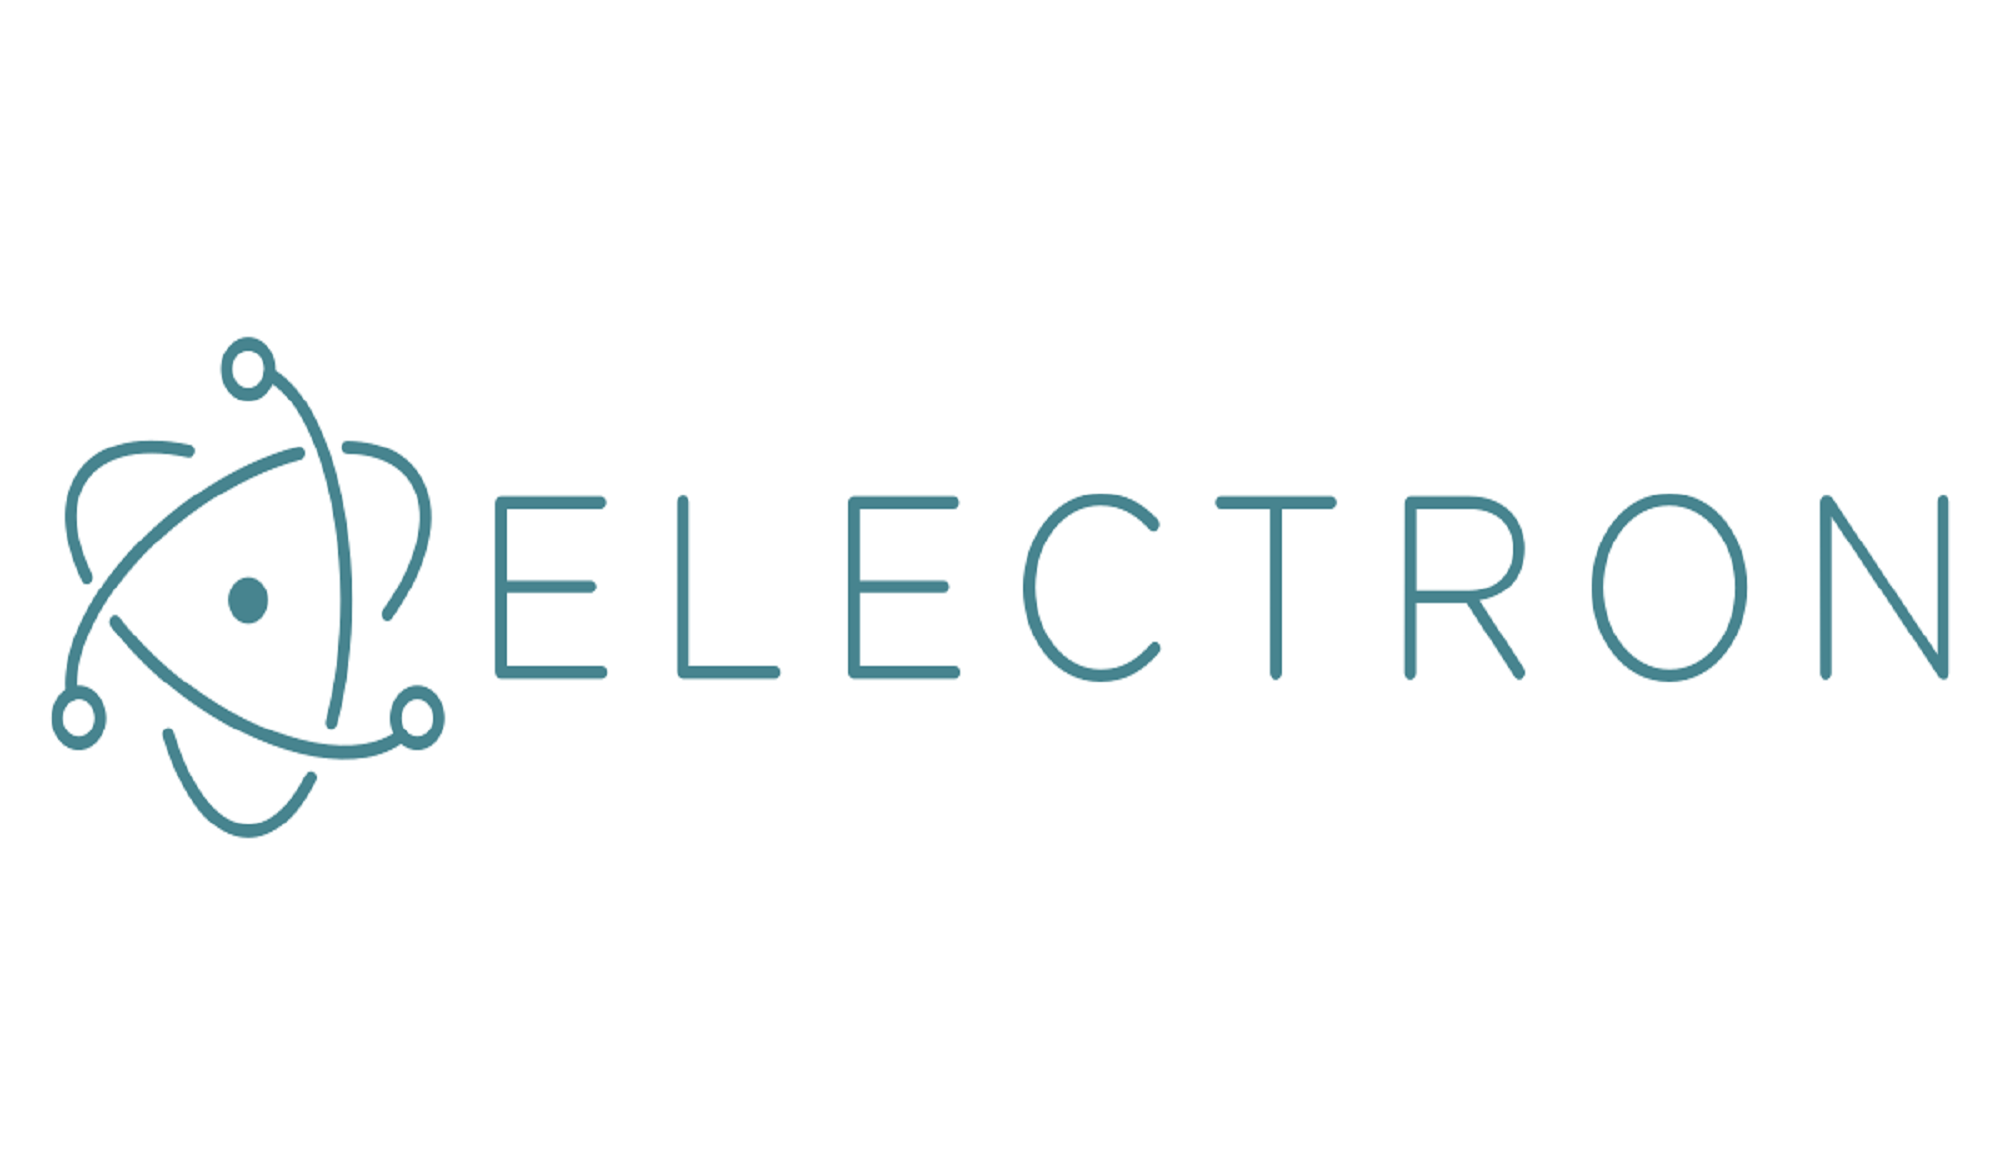 electronjs website build